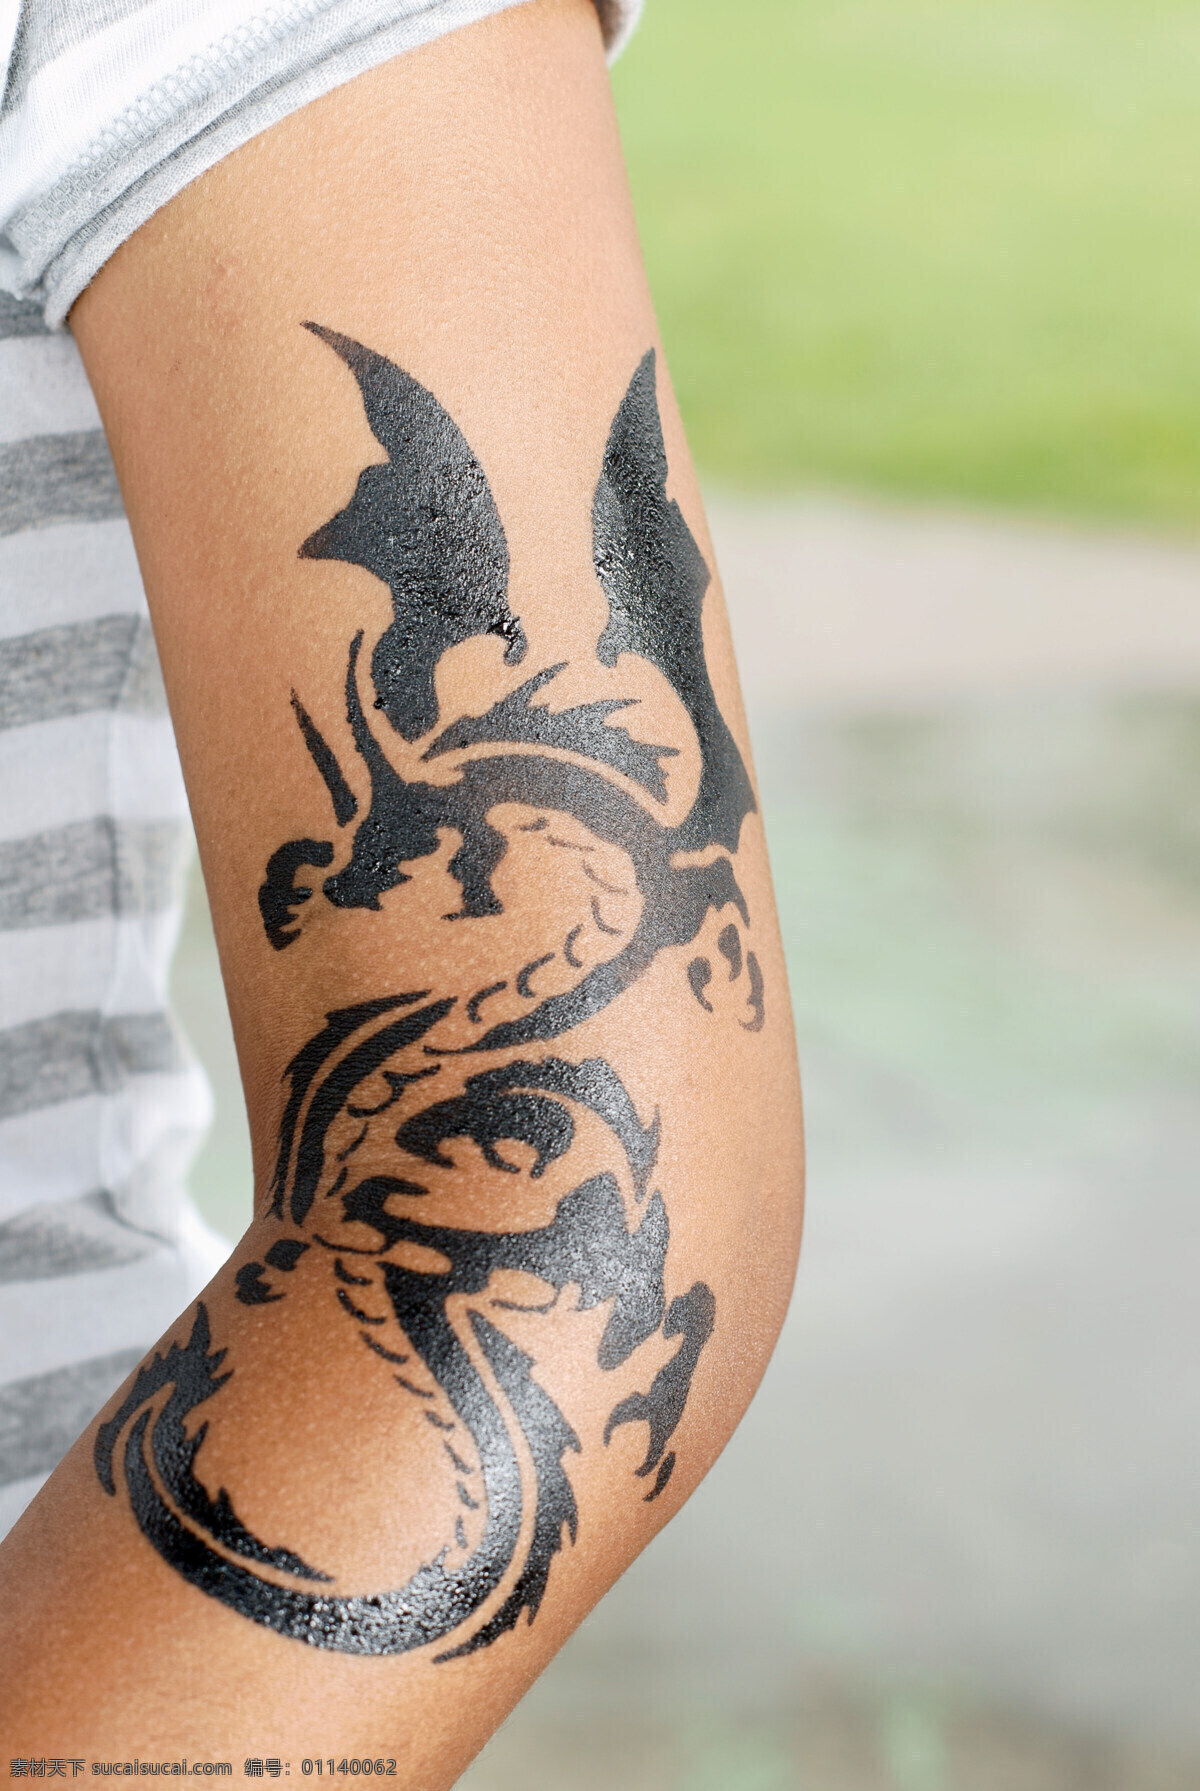 手臂纹身图案 手臂纹身 纹身 刺青 纹身图案 手臂 刺青图案